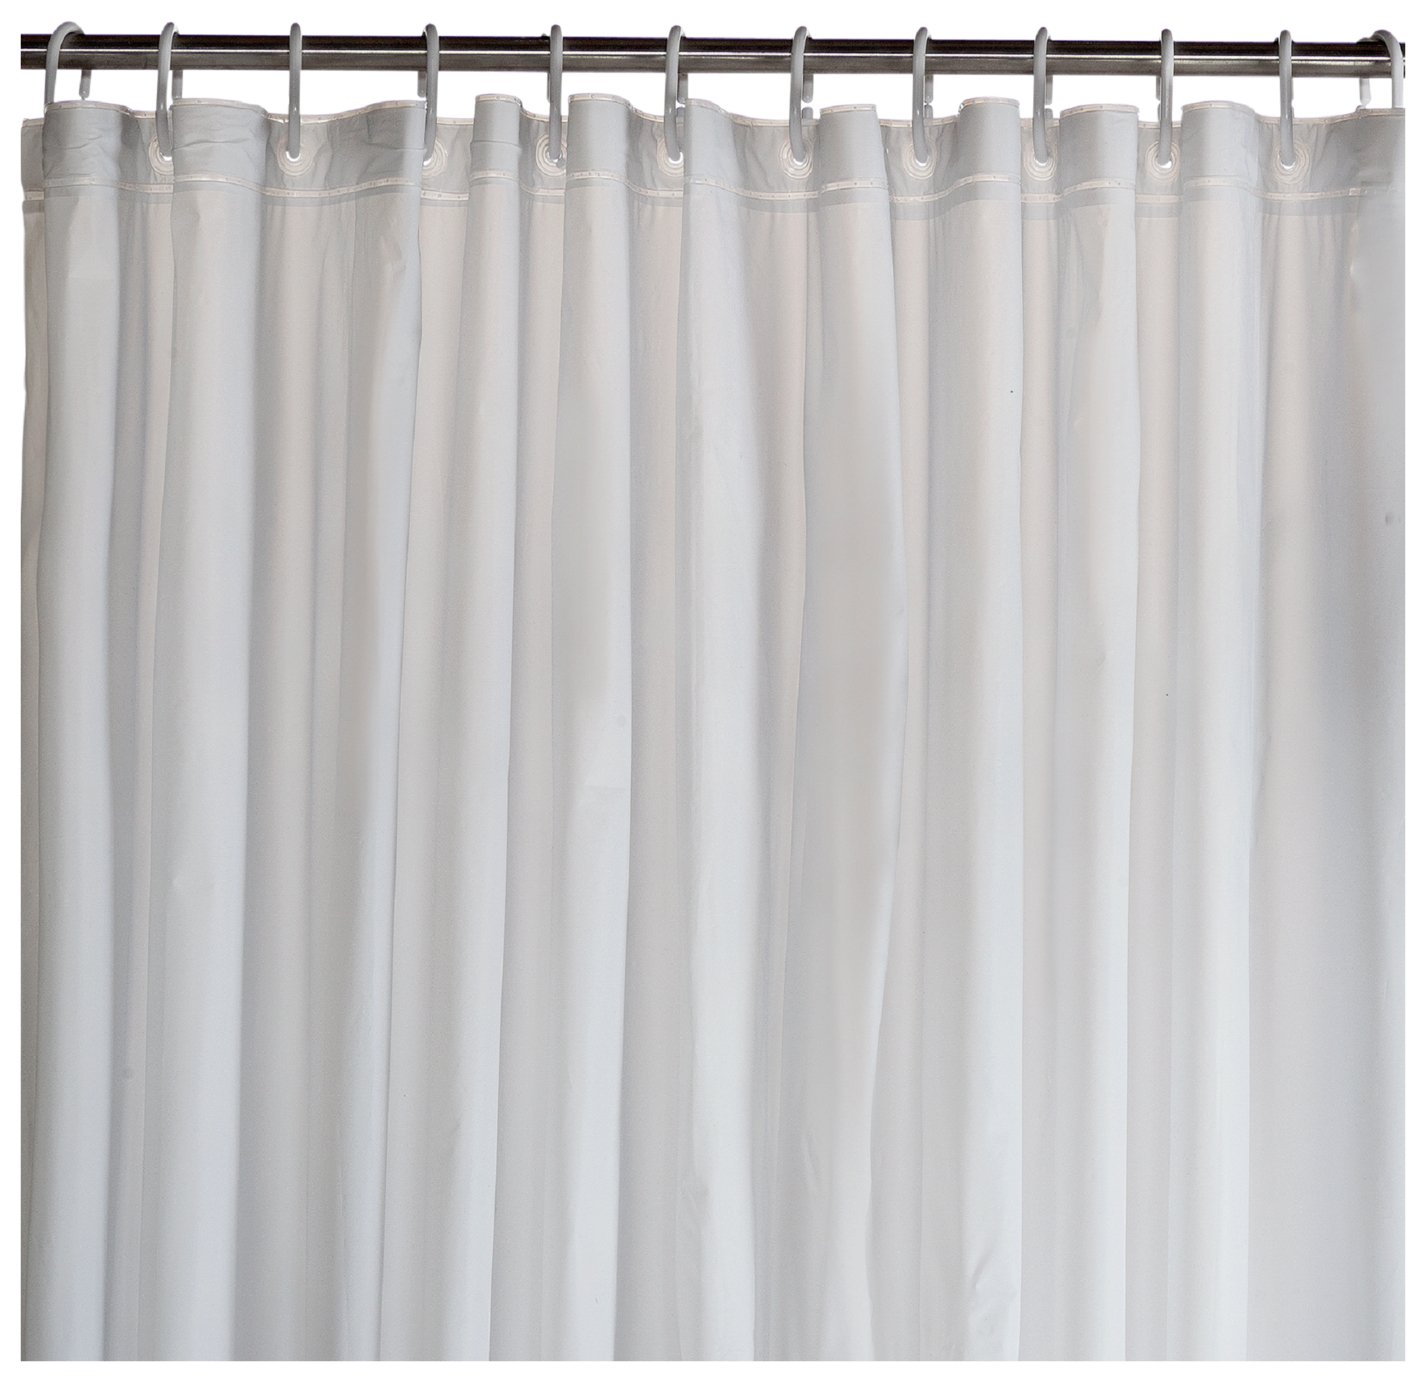 Home Essentials Plain Shower Curtain - White